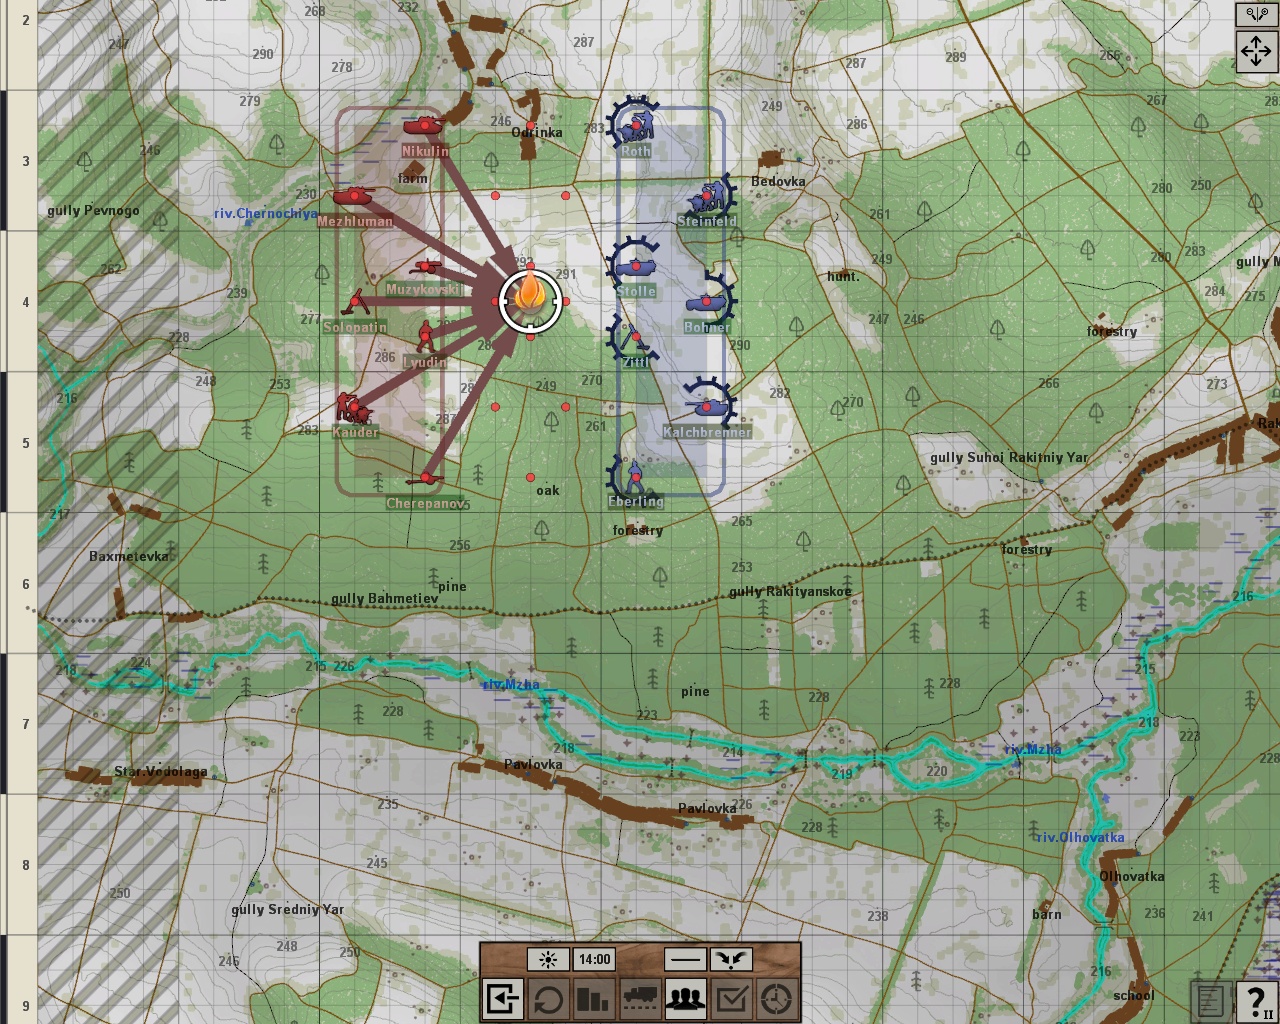 Graviteam Tactics: Volokonovka 1942 screenshot